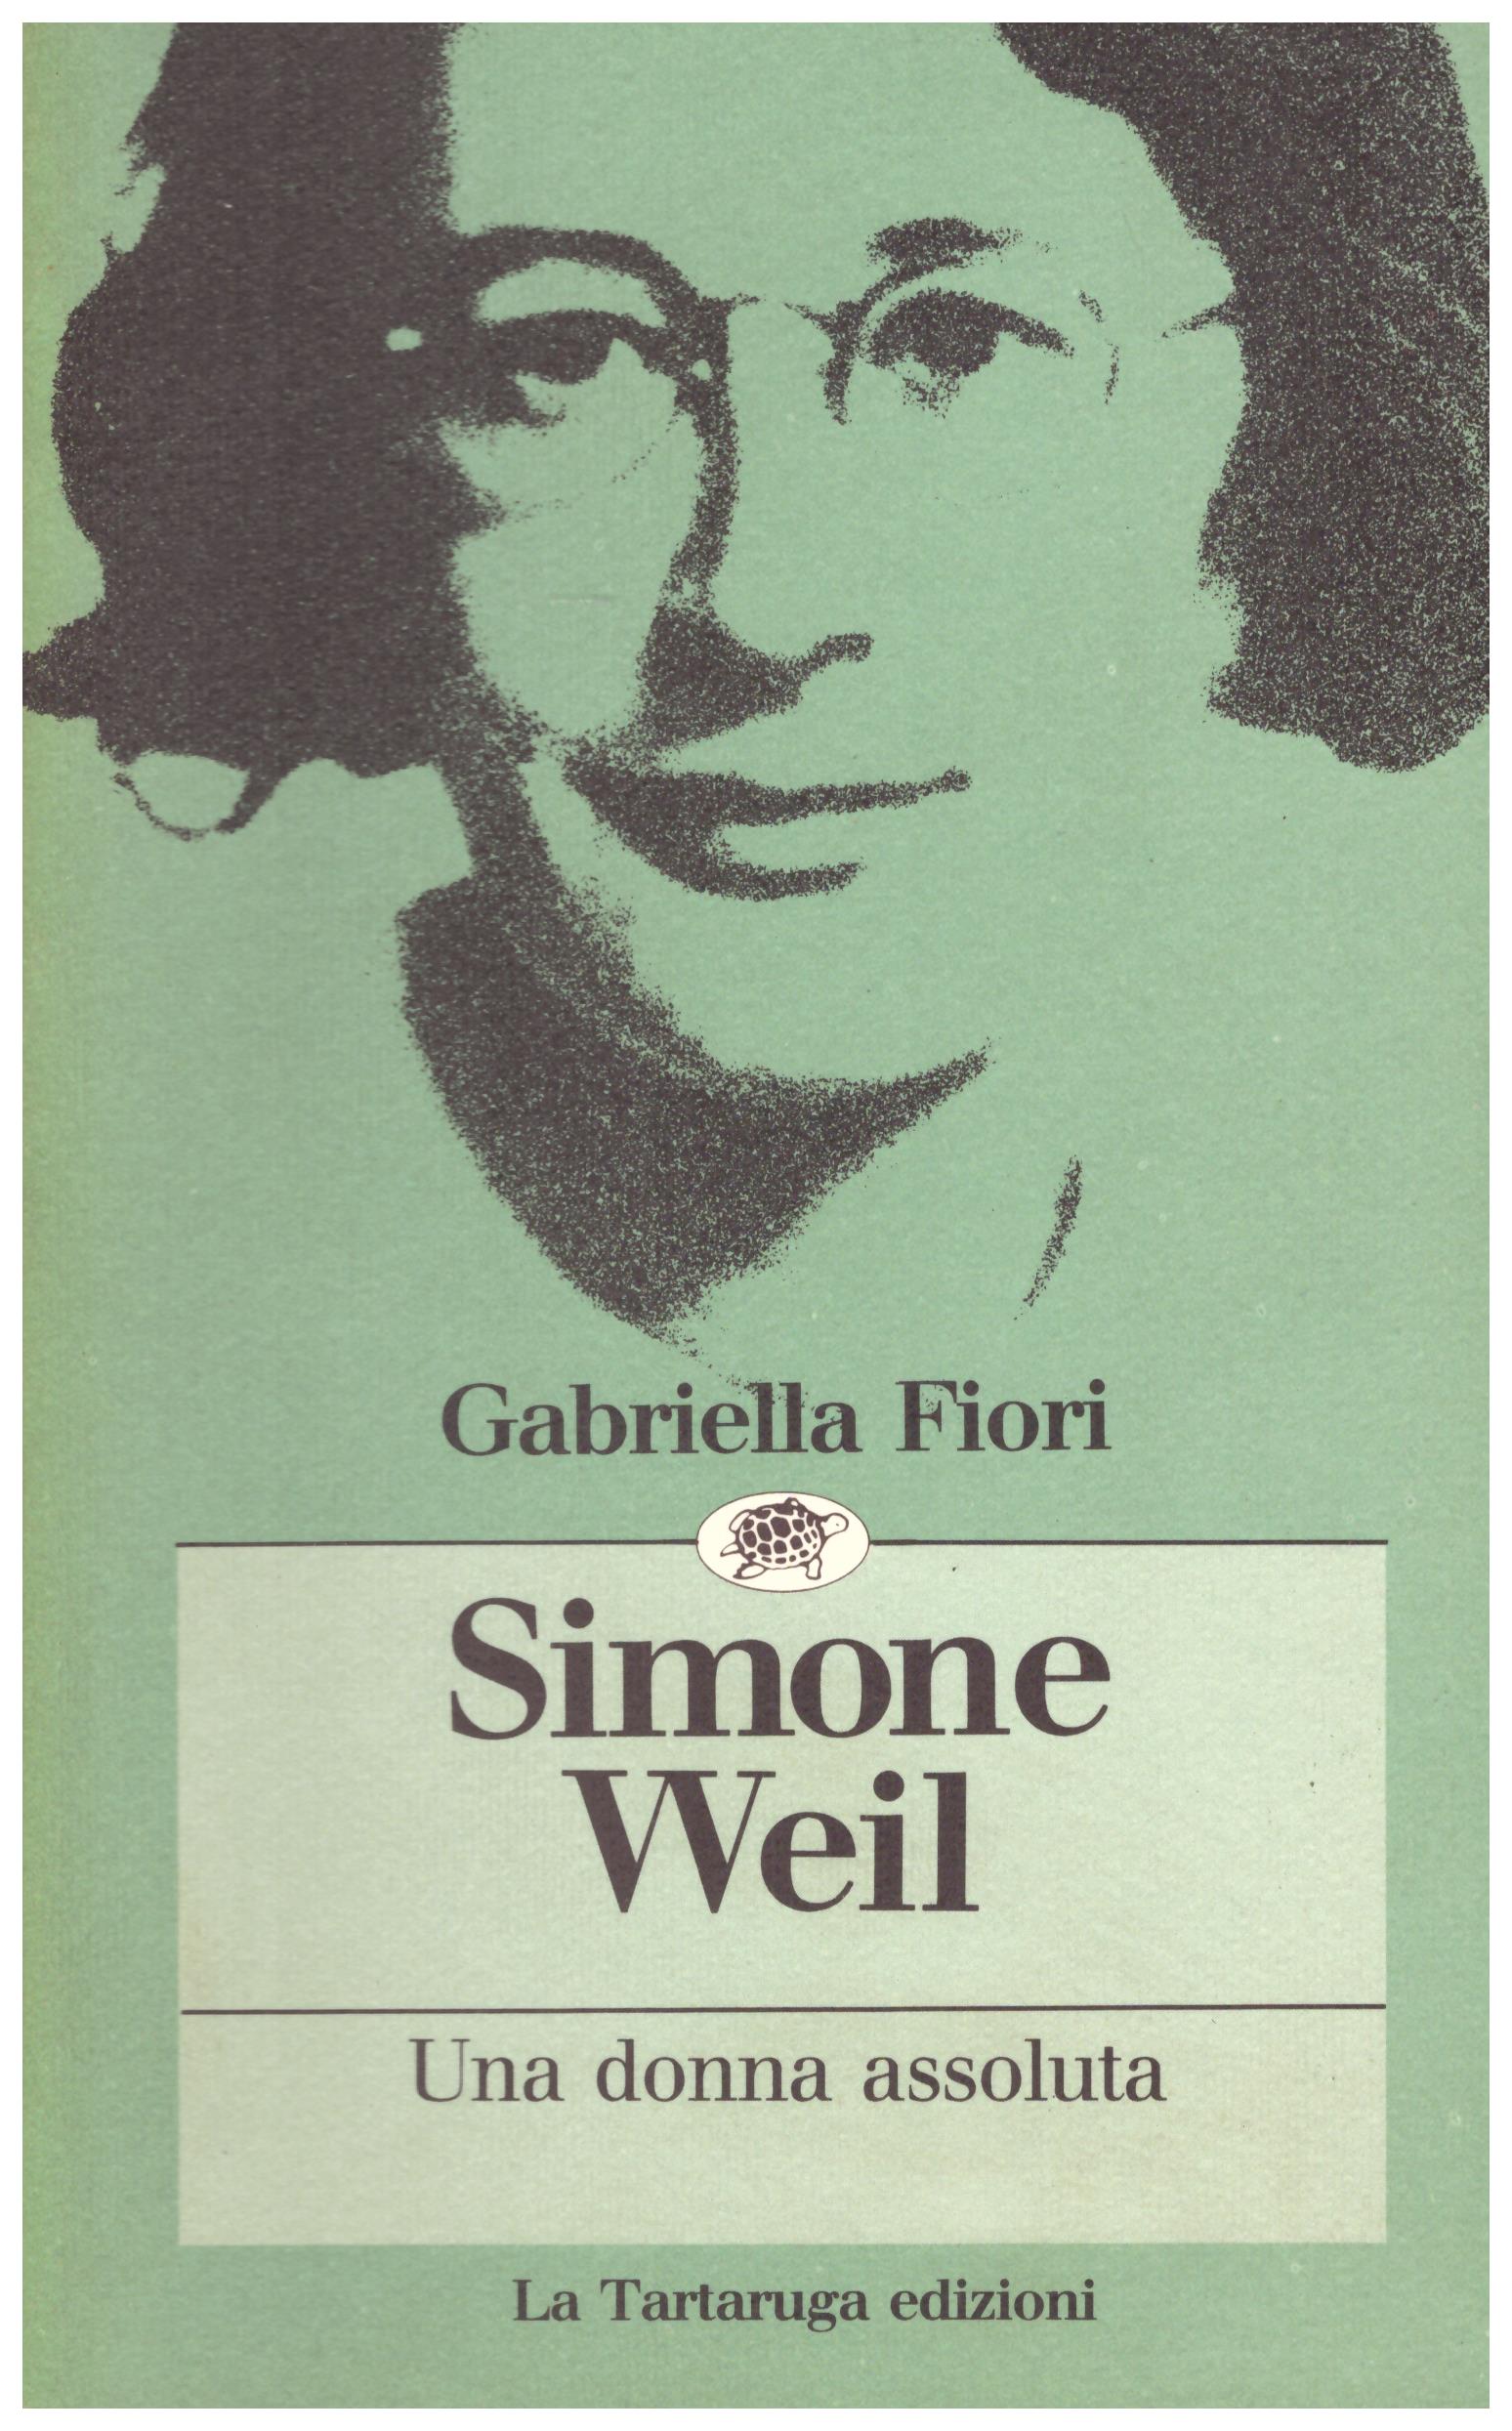 Titolo: Simone Weil una donna assoluta    Autore: Gabriella Fiori     Editore: La Tartaruga Edizioni